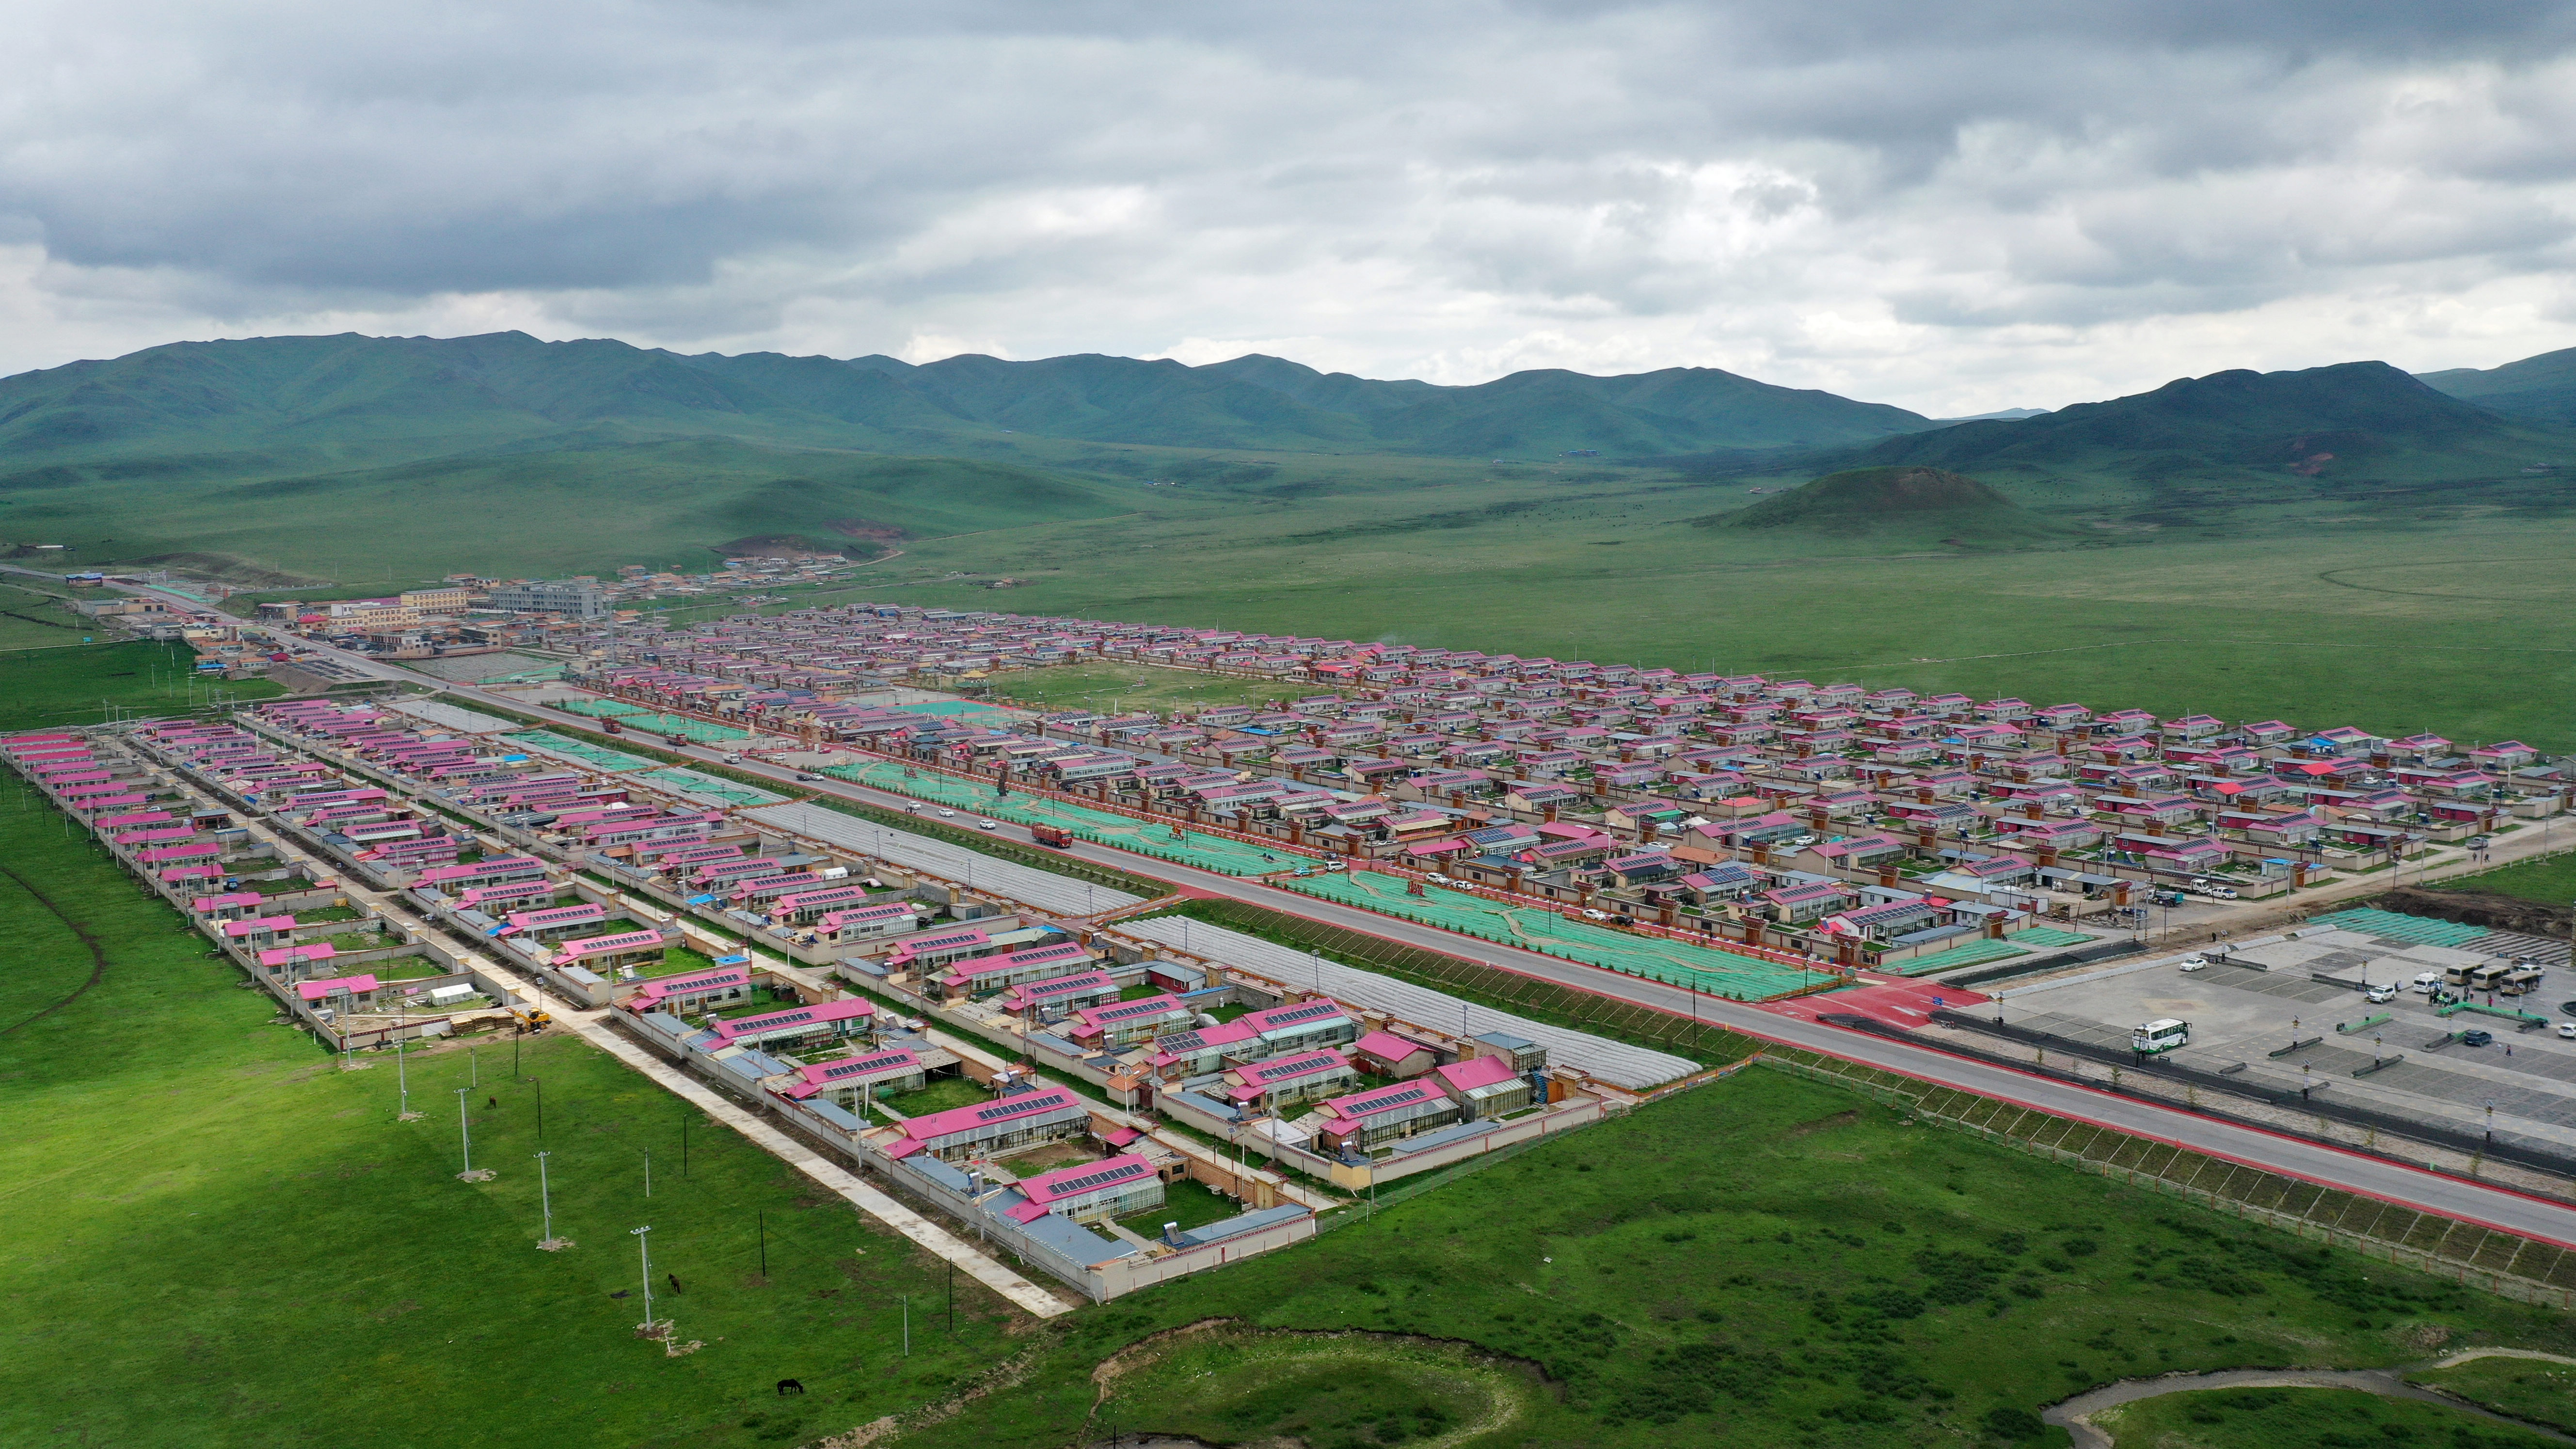 ↑ 这是6月20日拍摄的甘南藏族自治州碌曲县尕海镇尕秀村村貌(无